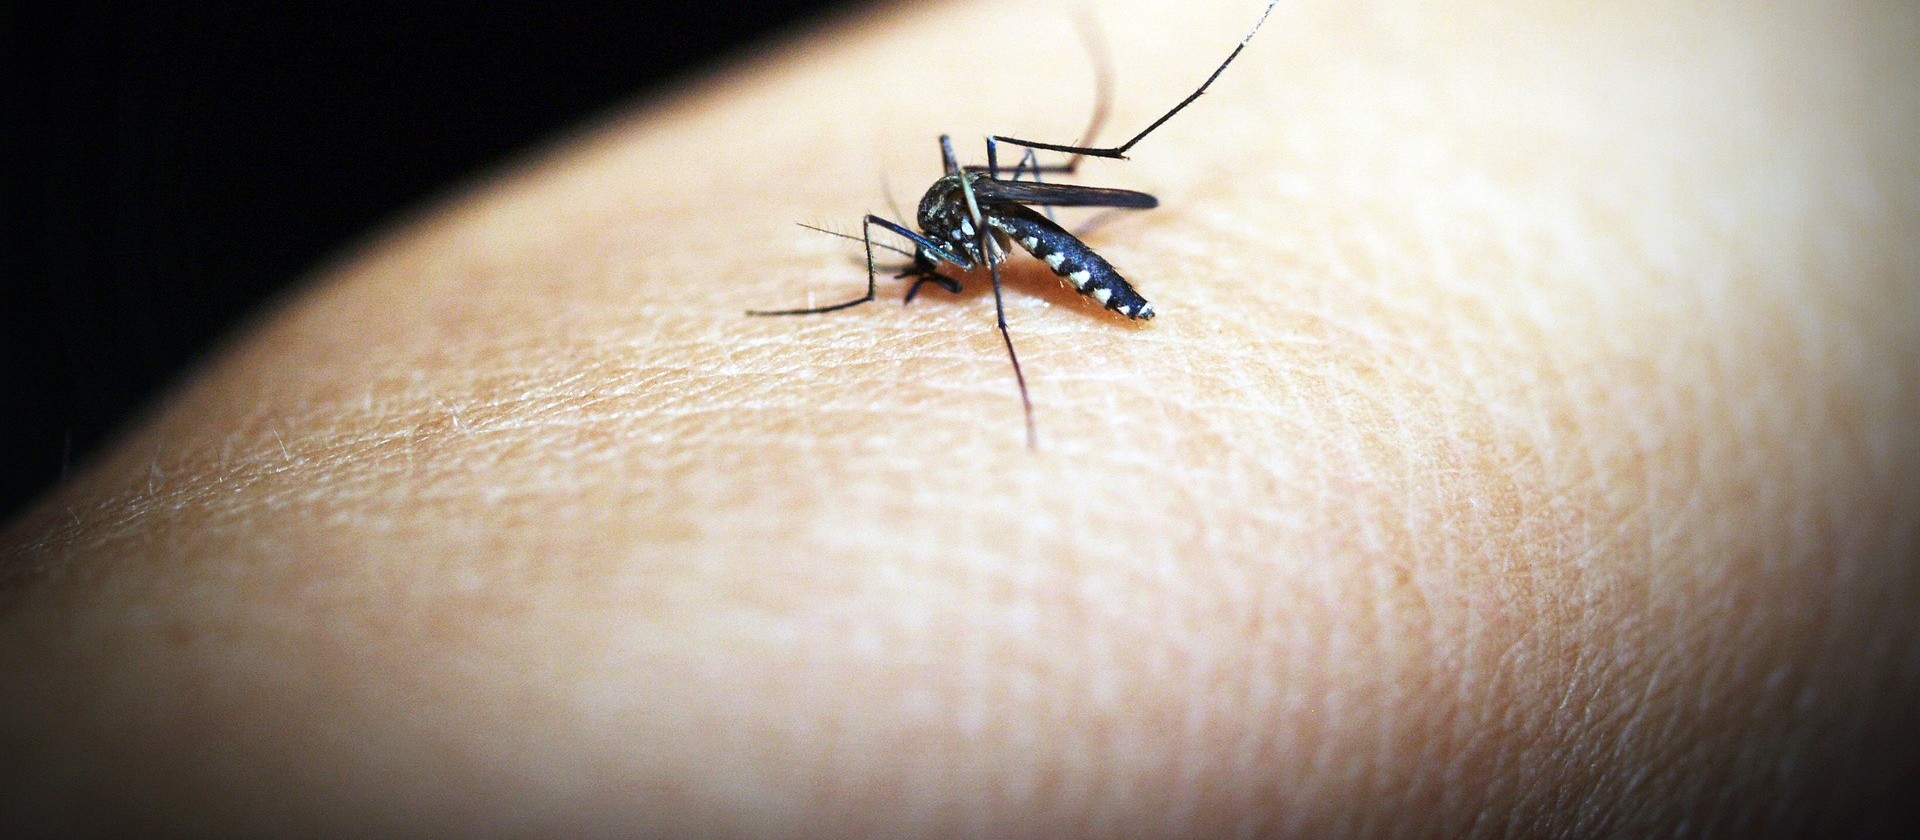 EPIDEMIA: Cascavel chega a mais de 2,4 mil casos de dengue e apela à população para eliminar criadouros